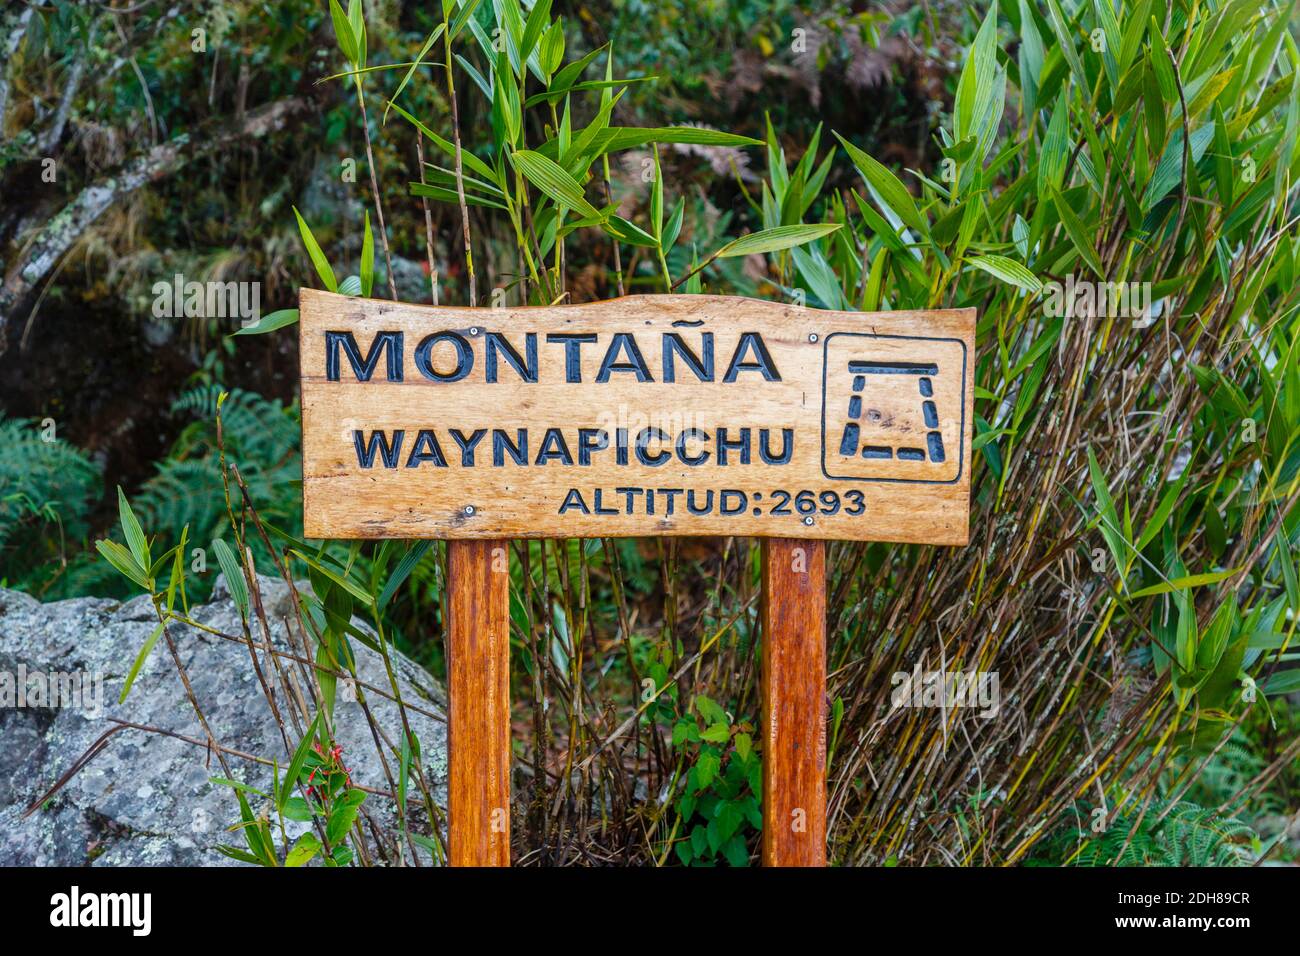 Panneau en bois avec l'altitude de 2693 mètres près du sommet ascendant Huayna Picchu (Waynapicchu) montagne derrière Machu Picchu, Pérou Banque D'Images